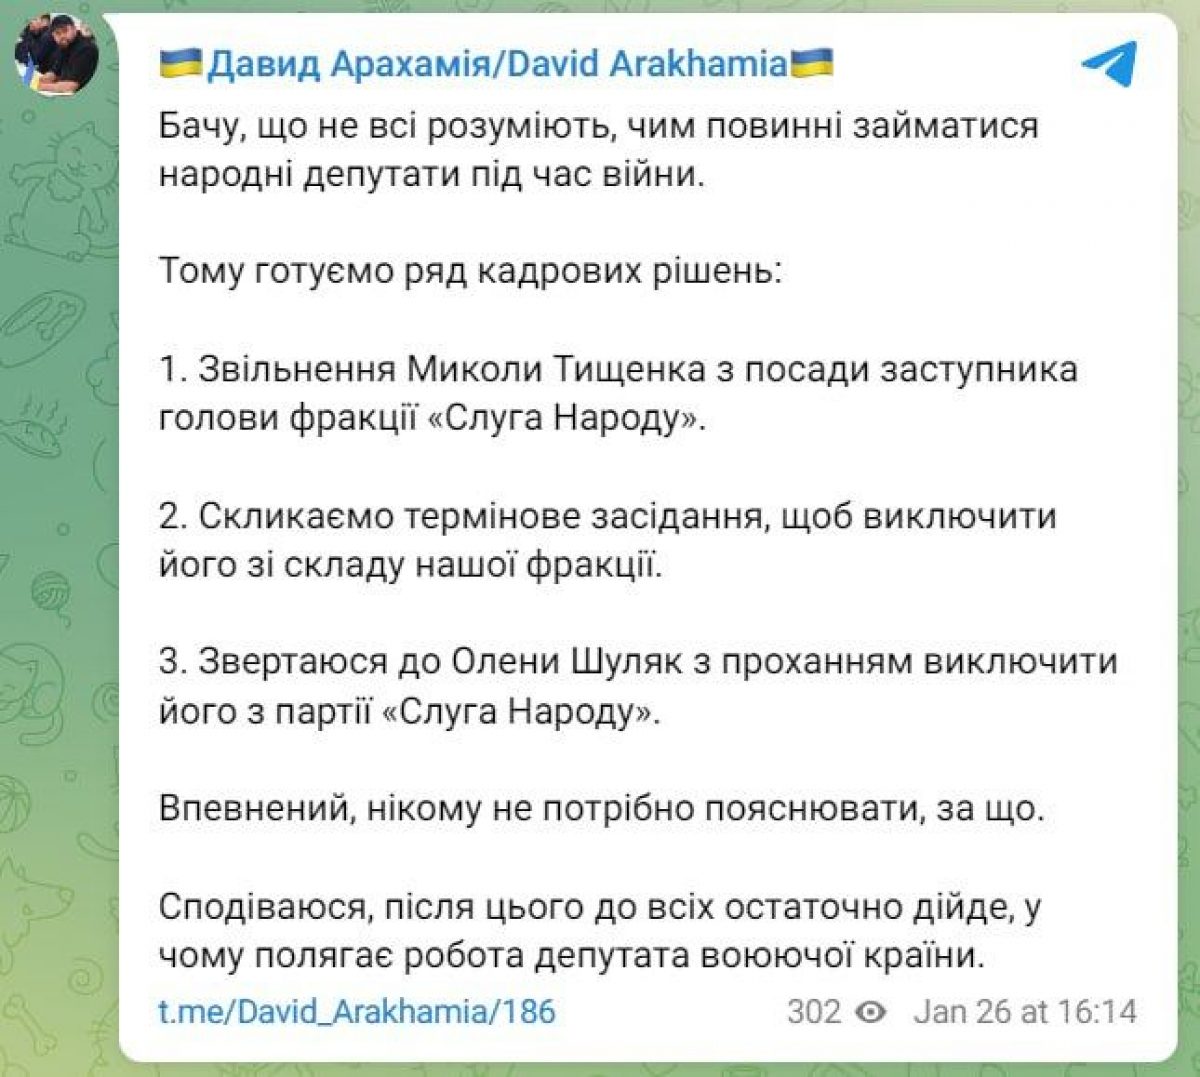 Труха телеграмм украина на русском языке смотреть онлайн бесплатно фото 21